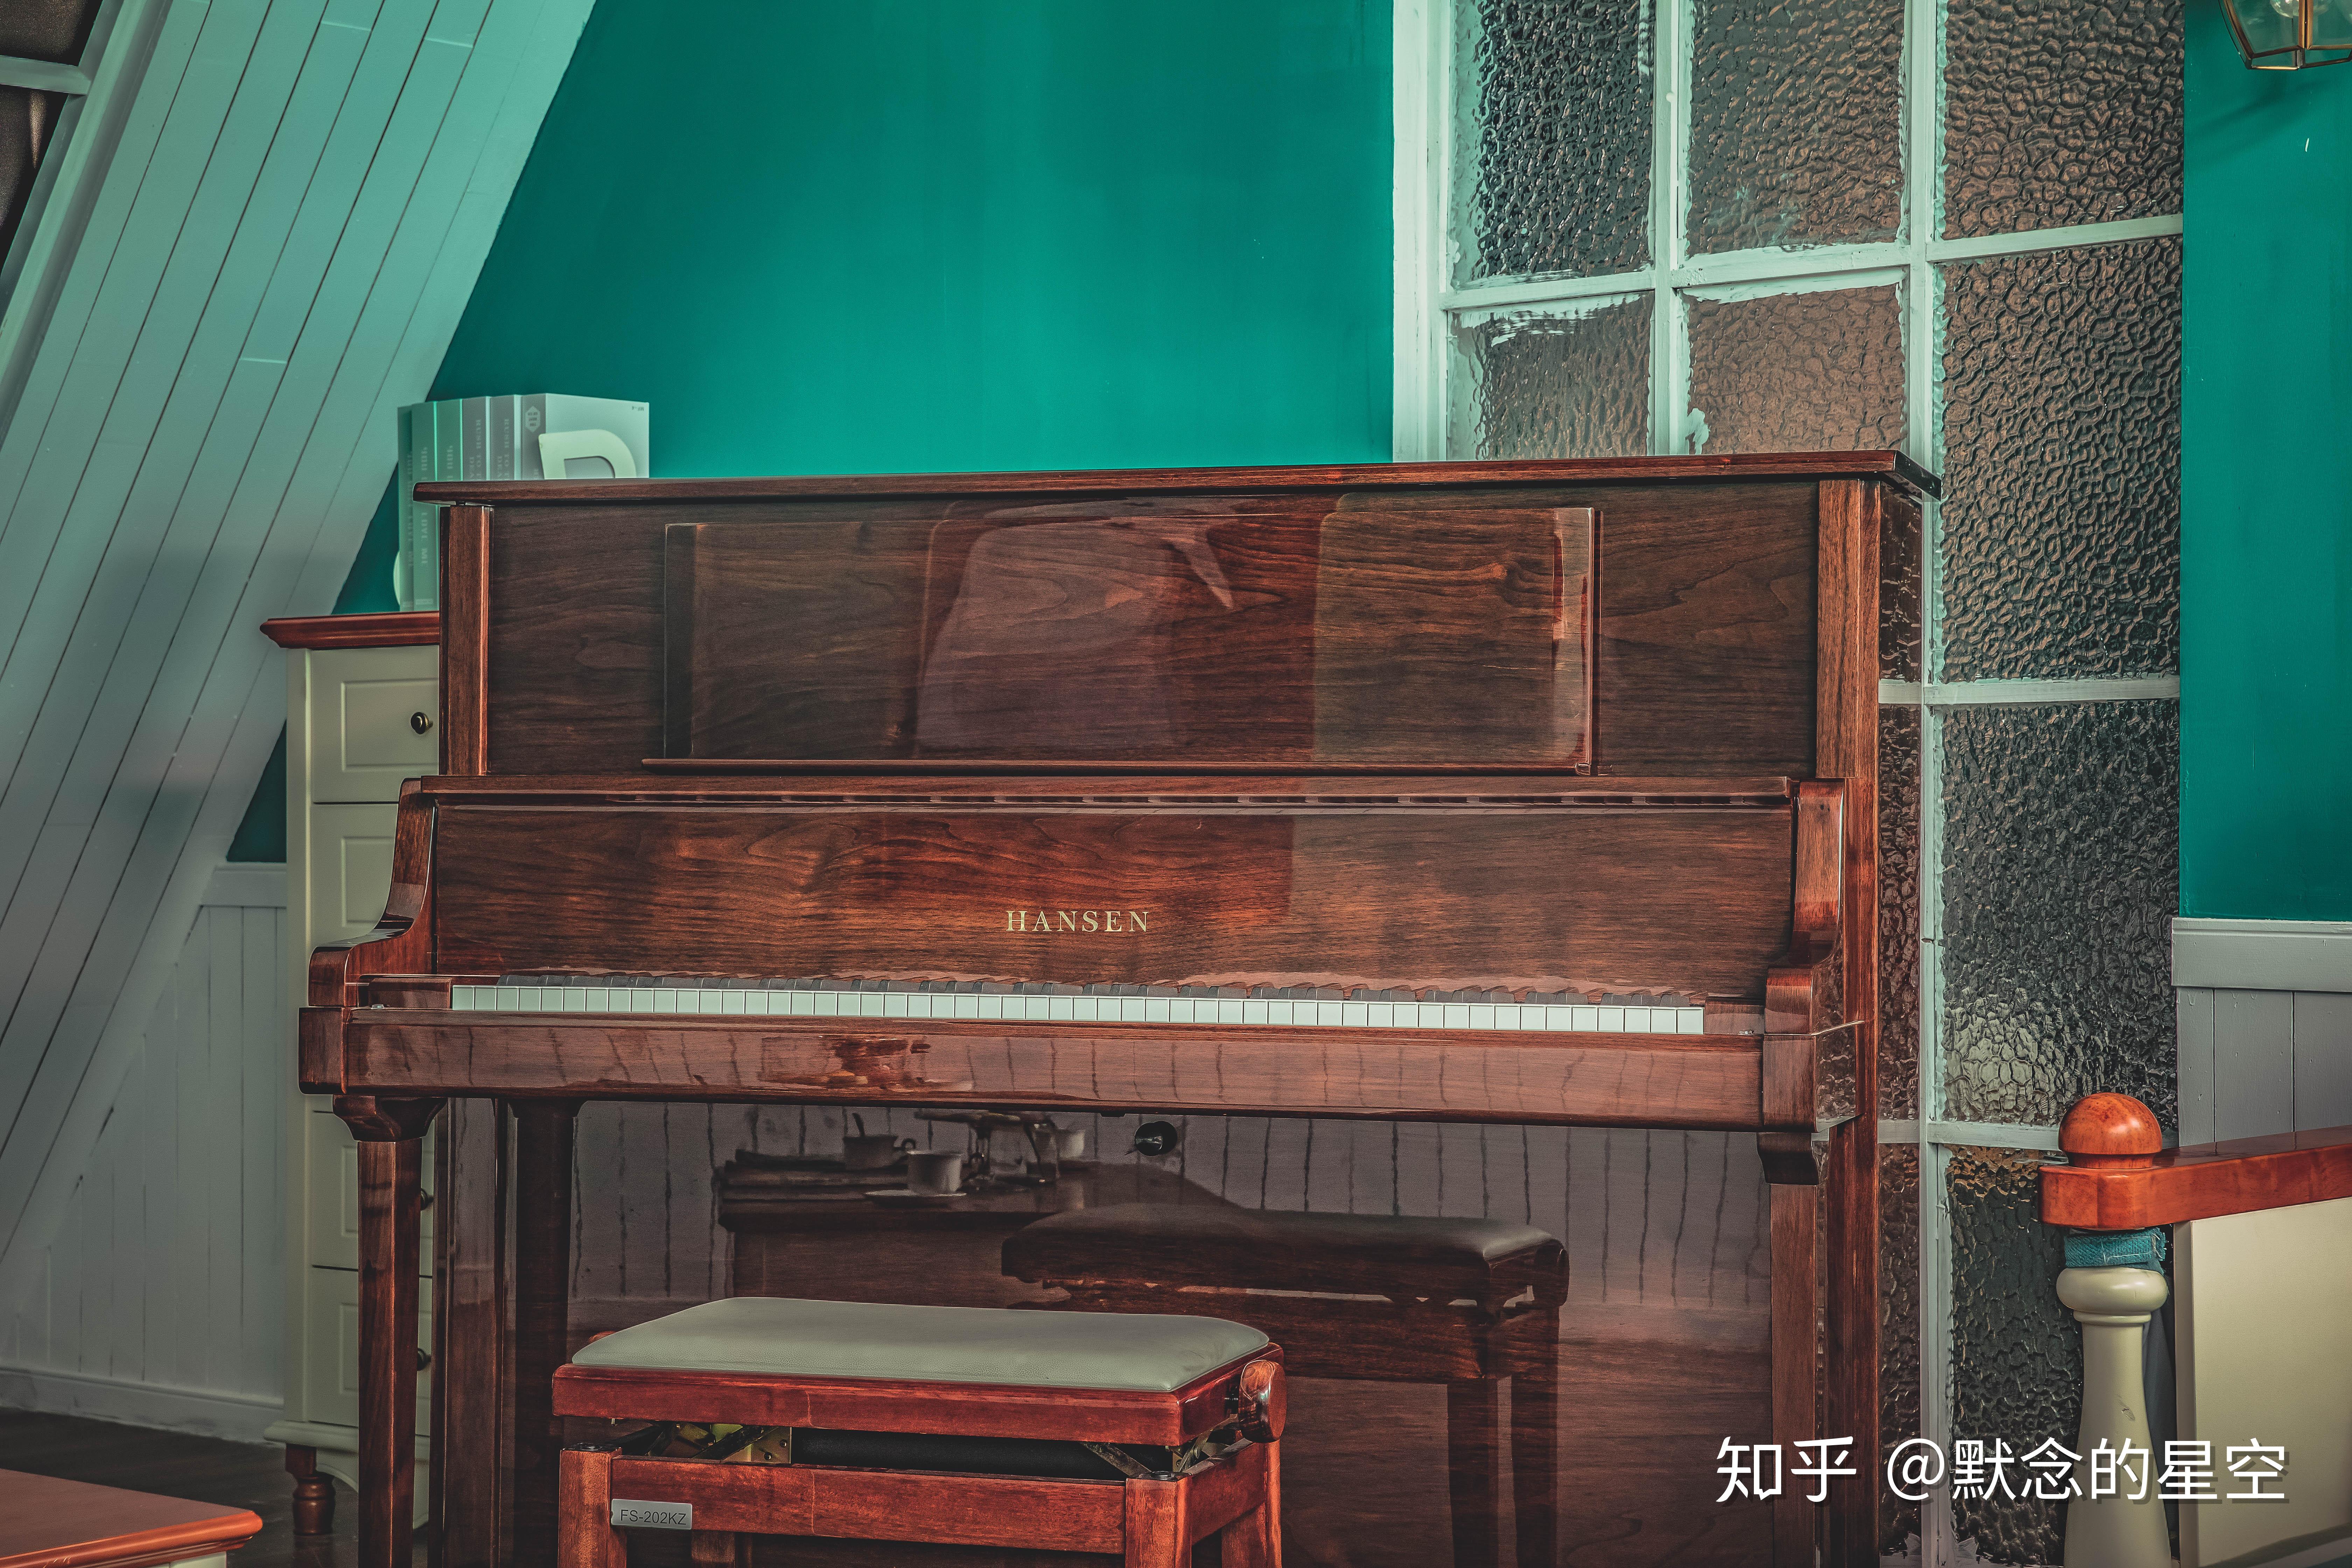 翰森钢琴,触感舒适的黑白琴键;欧洲进口鱼鳞云杉木,环保抗氧化abs树脂